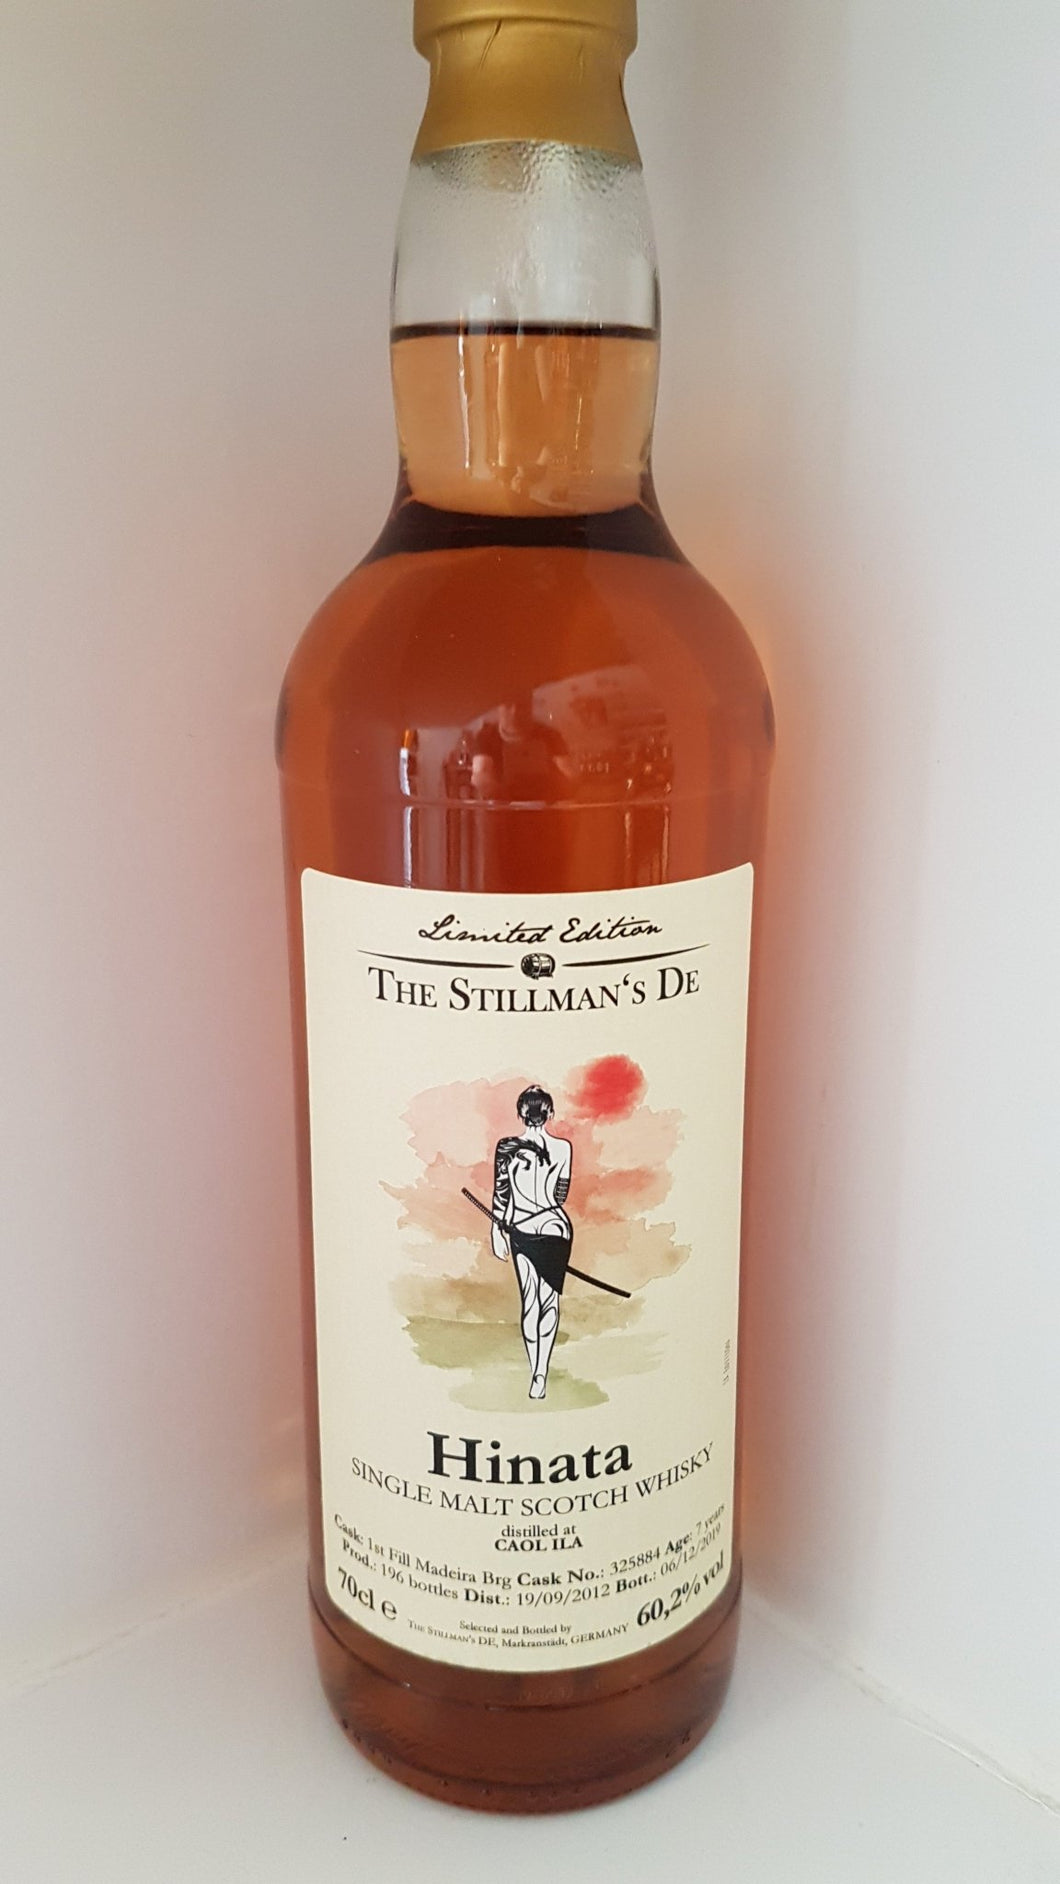 The Stillman´s Whisky Hinata Caol Ila 0.7 60.2% inn-out-shop 